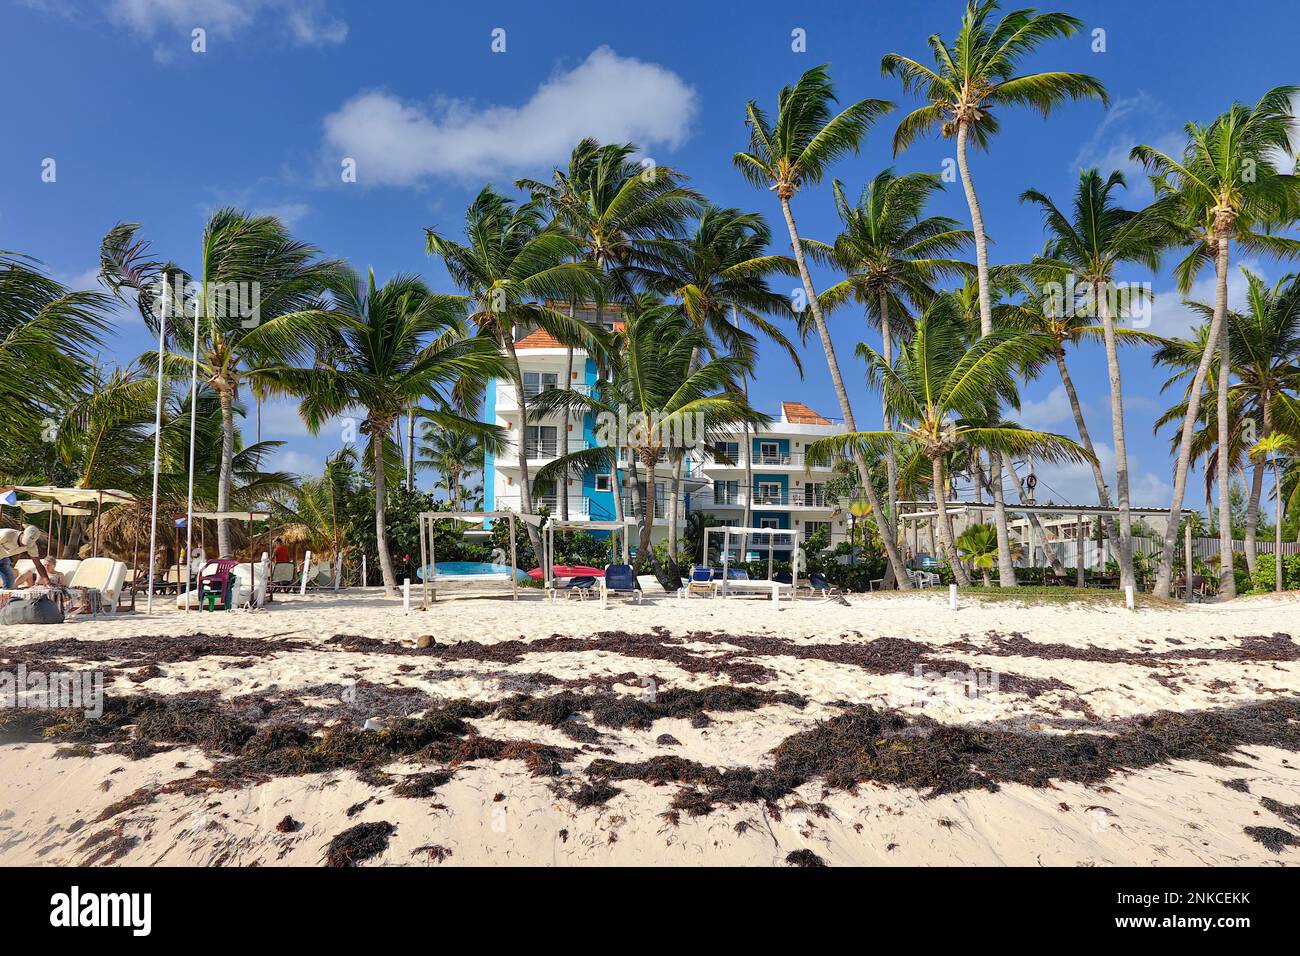 Plage polluée avec des algues en face d'un complexe, Punta el Cortecito, Playa Bavaro, Punta Cana, République Dominicaine, Caraïbes, Amérique centrale Banque D'Images